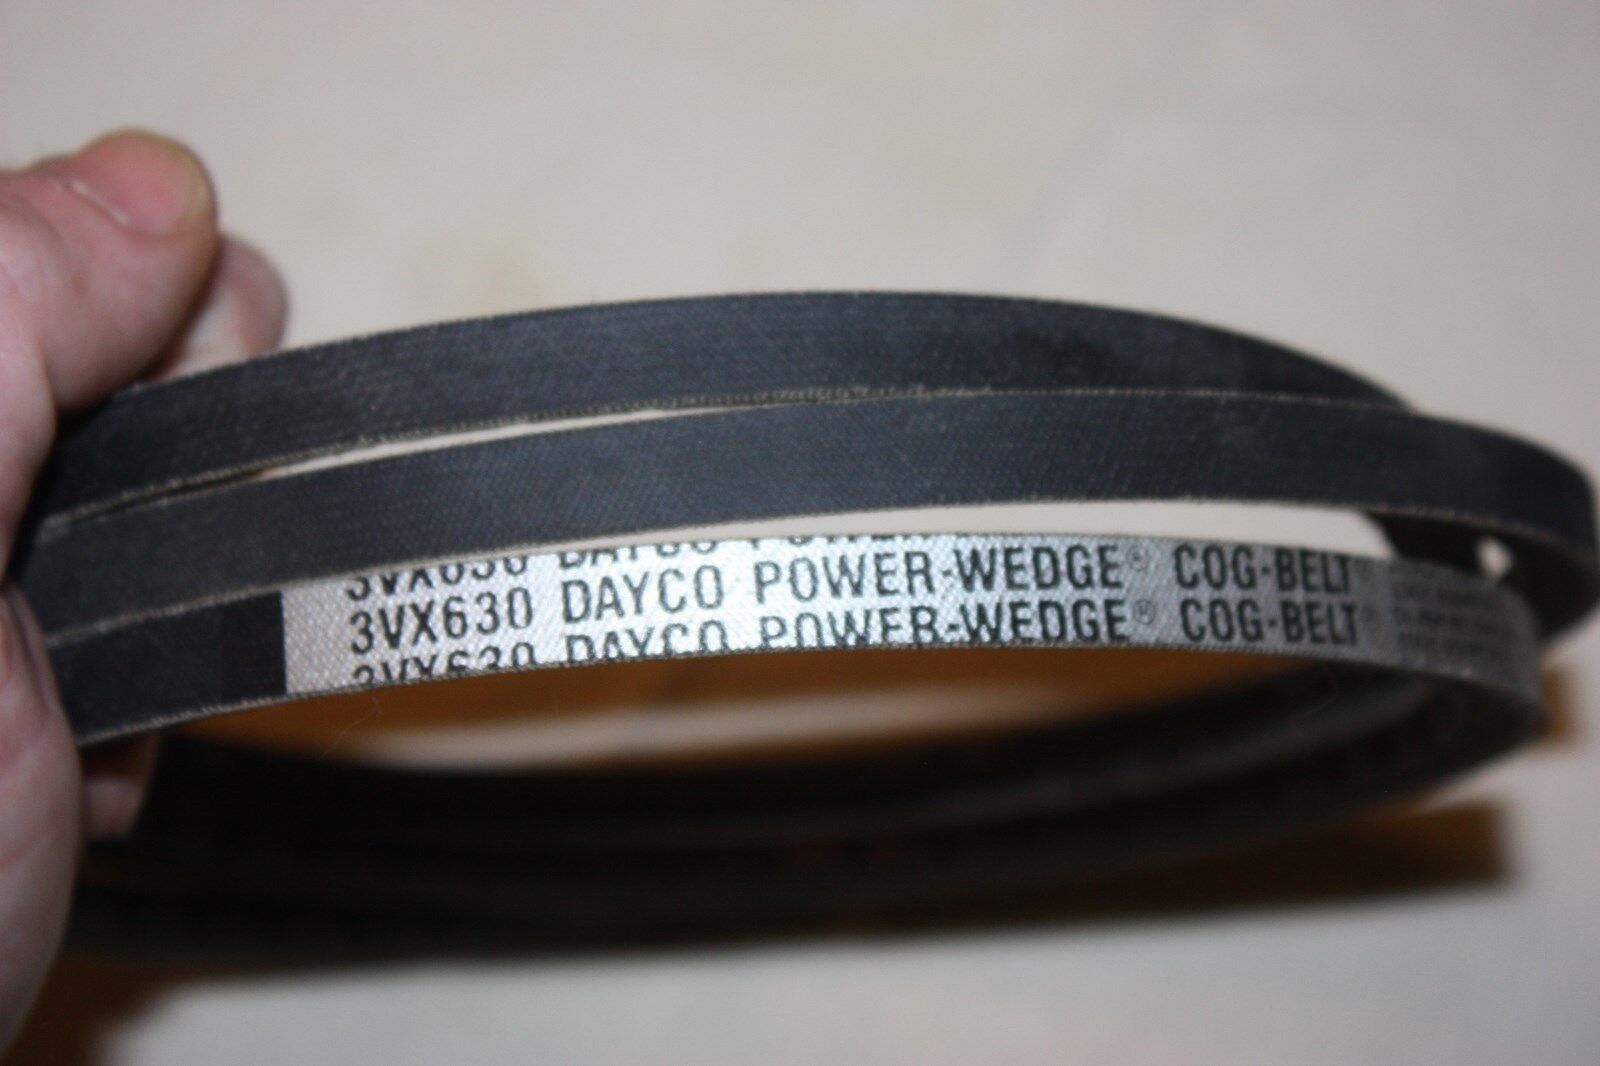 Dayco 3VX630 Power-Wedge Cog V-Belt NEW